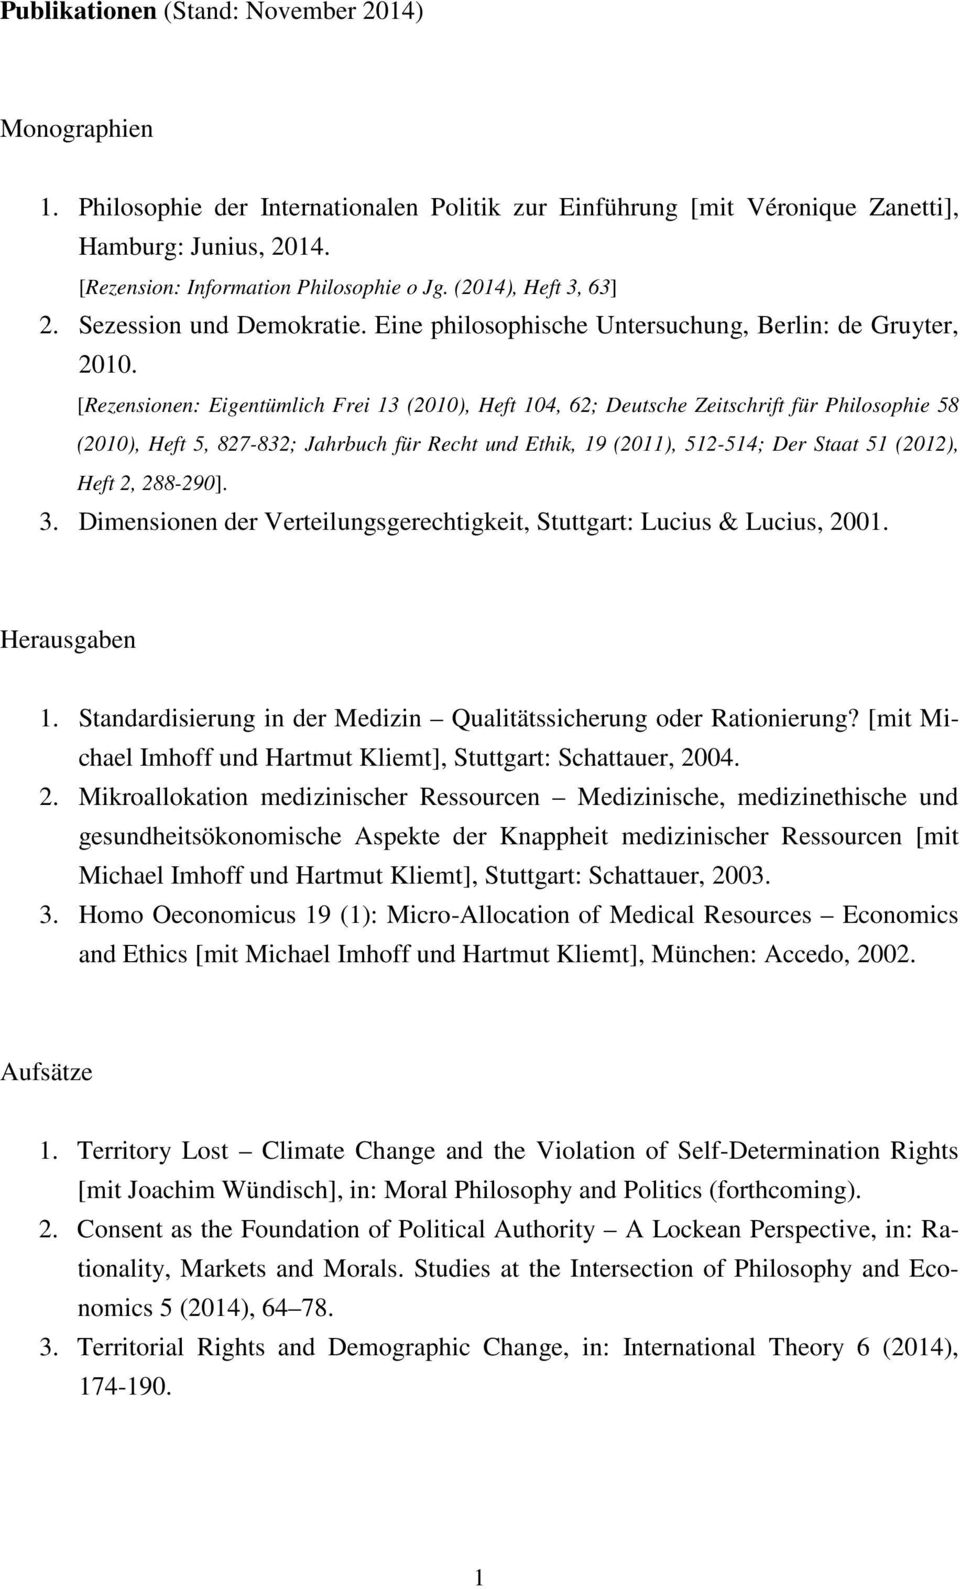 [Rezensionen: Eigentümlich Frei 13 (2010), Heft 104, 62; Deutsche Zeitschrift für Philosophie 58 (2010), Heft 5, 827-832; Jahrbuch für Recht und Ethik, 19 (2011), 512-514; Der Staat 51 (2012), Heft